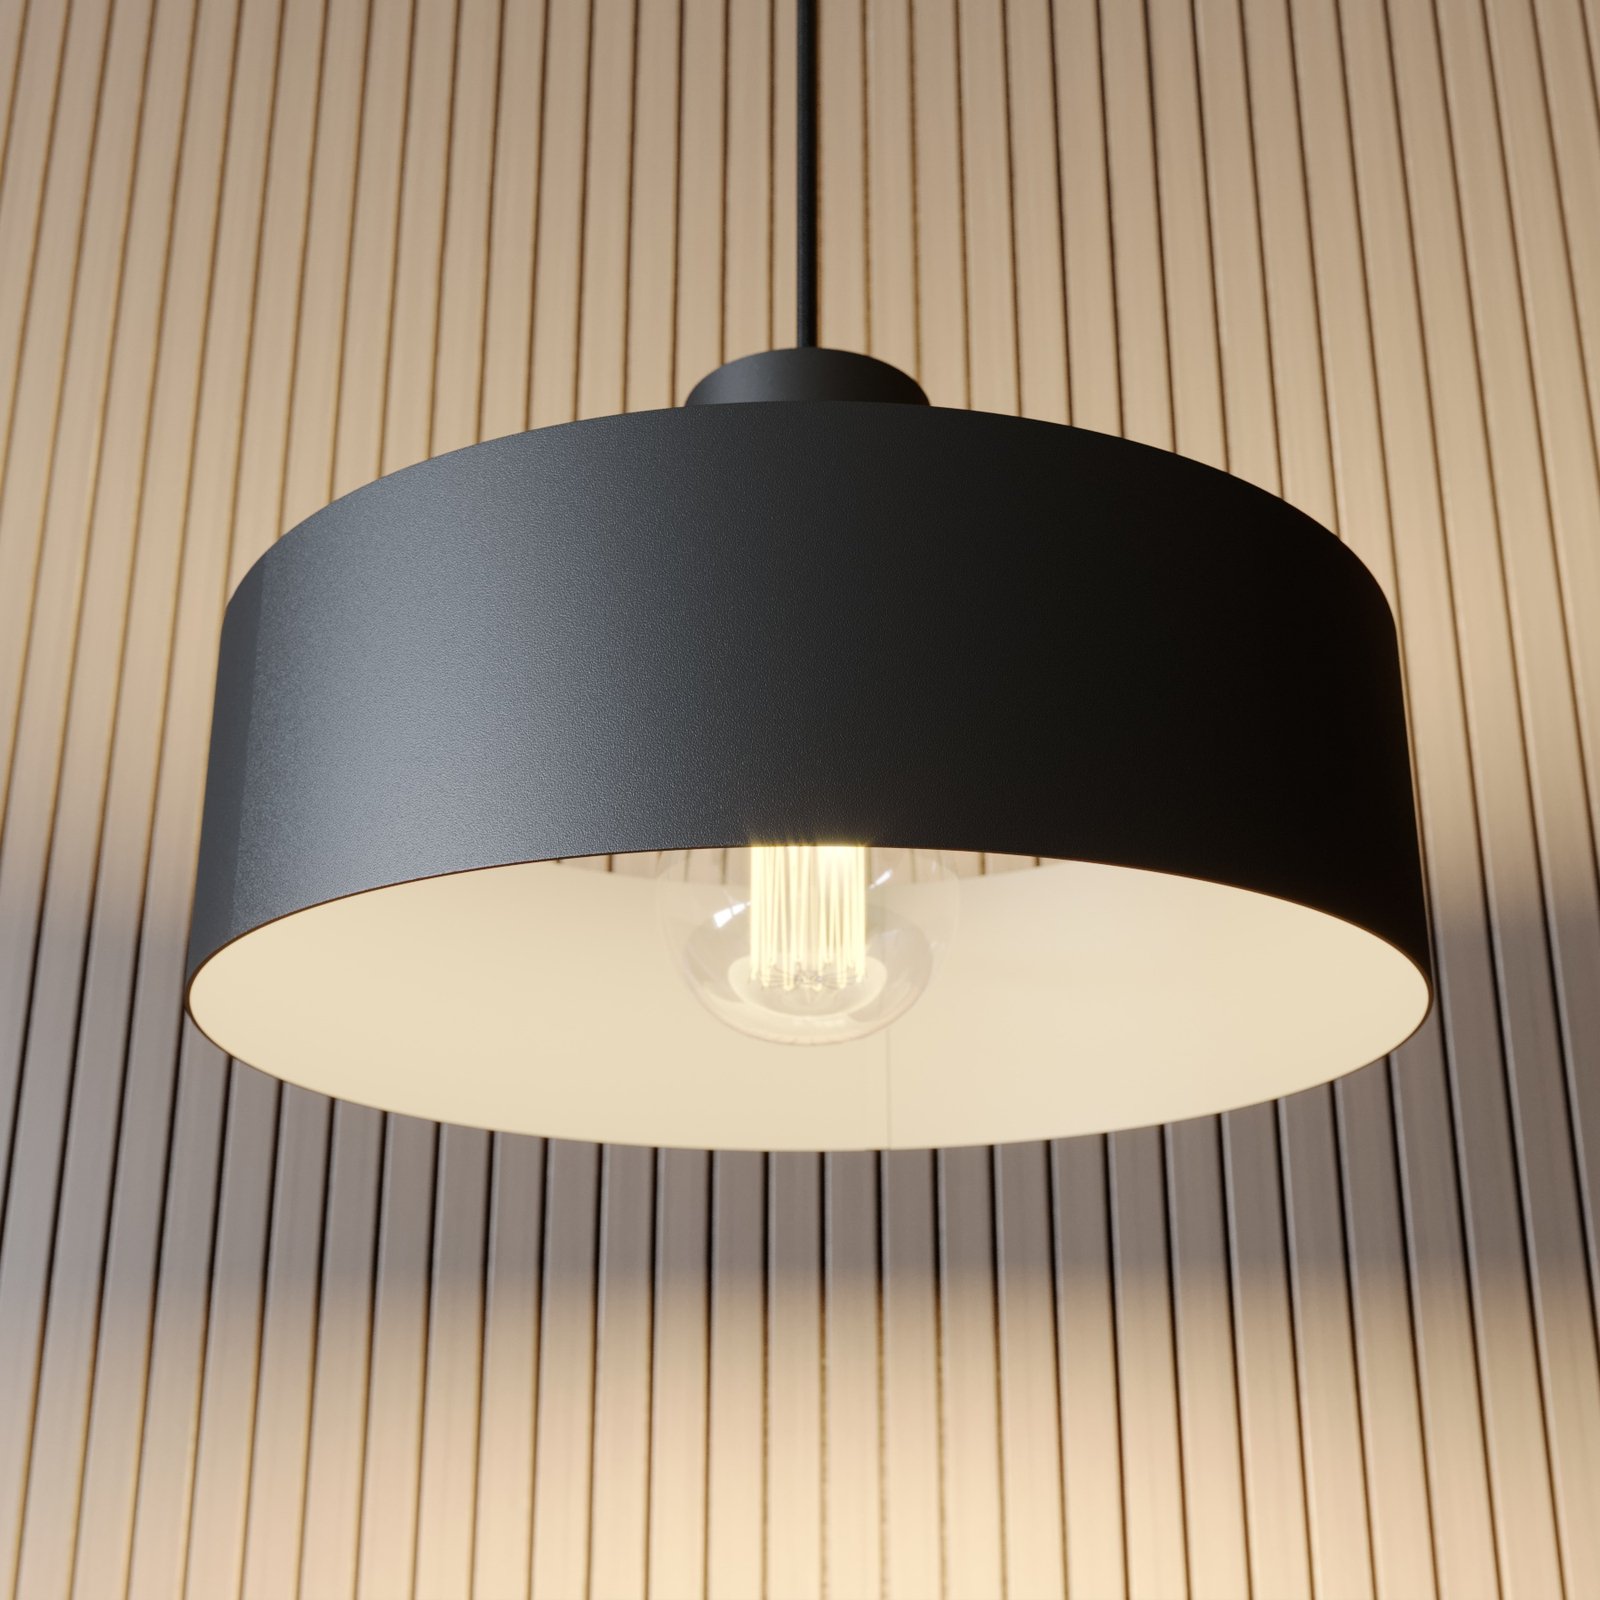 Hanglamp Rif van metaal, zwart, Ø 25 cm